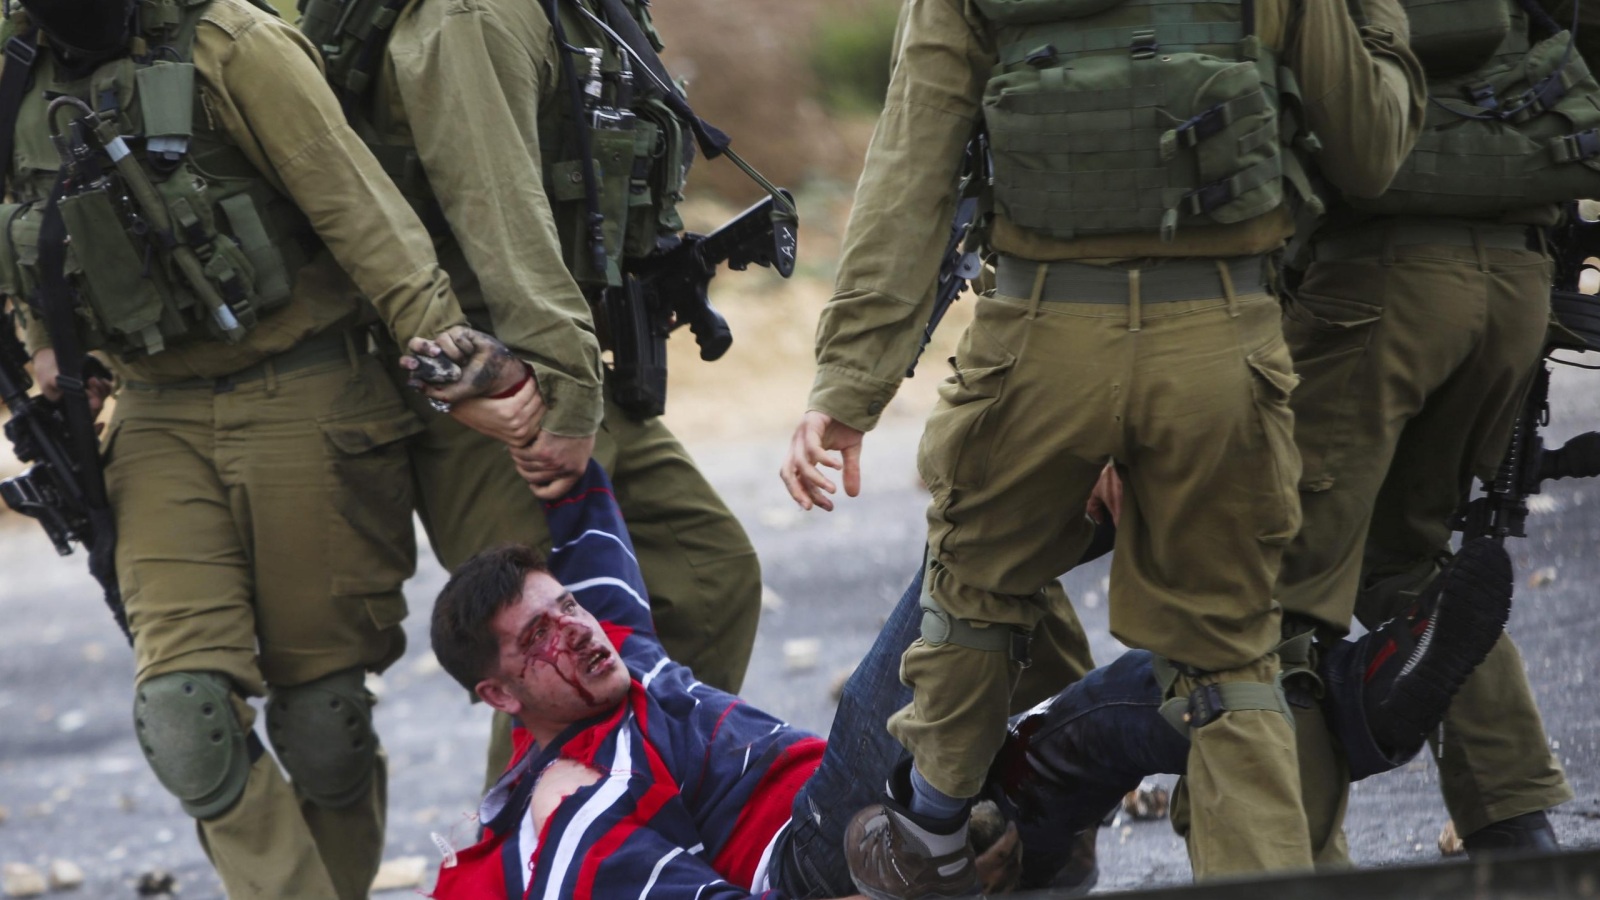 ‪جنود إسرائيليون يجرون شابا فلسطينيا أصابوه بالرصاص قرب رام الله‬ (الأوروبية)